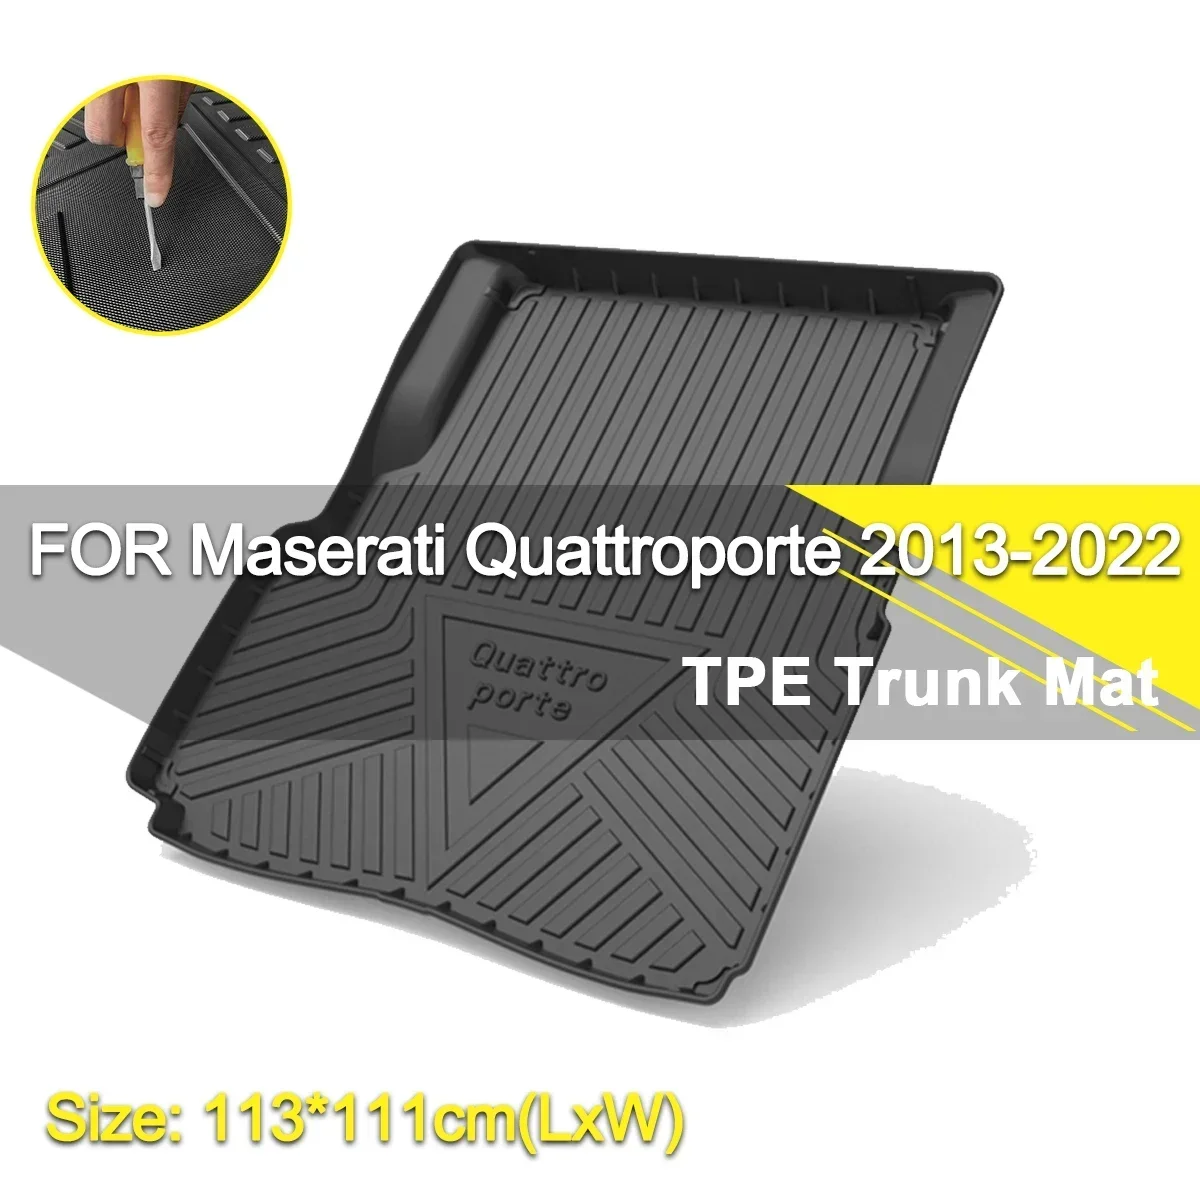 

Car Rear Trunk Cover Mat Waterproof Non-Slip Rubber TPE Cargo Liner Accessories For Maserati Quattroporte Ghibli Levante